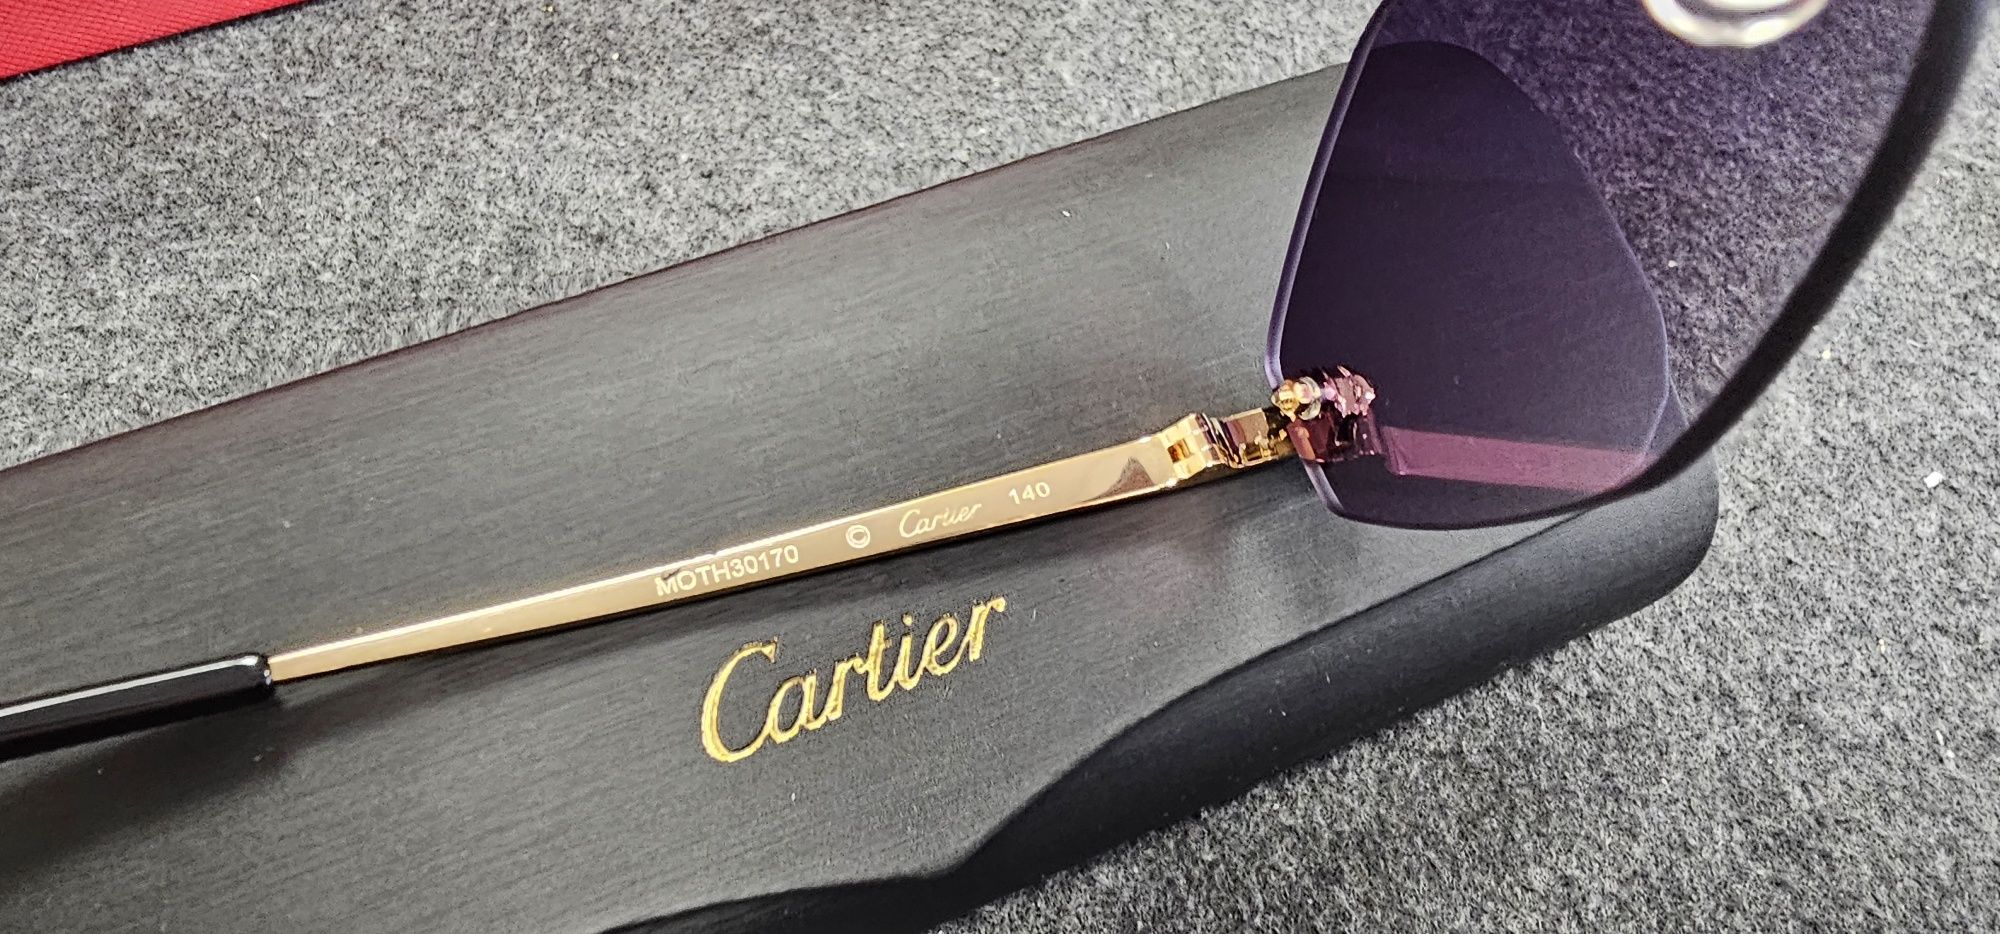 Cartier original